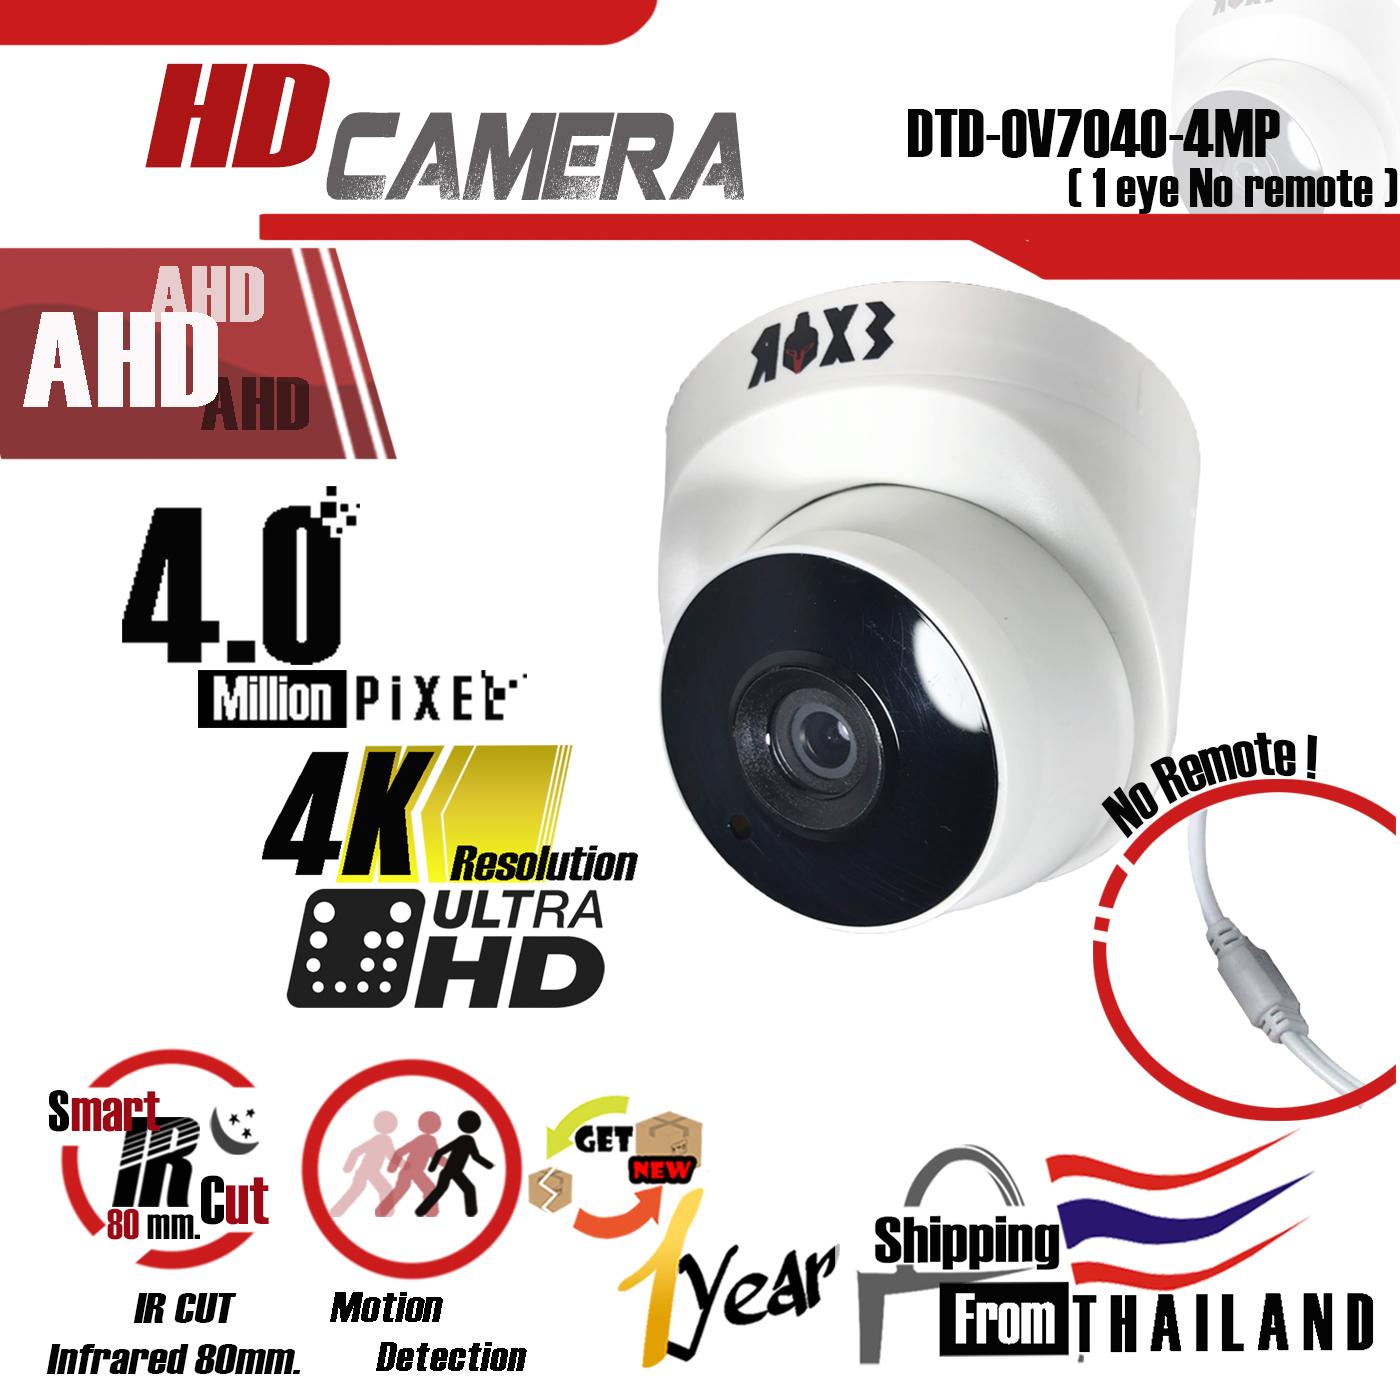 กล้องวงจรปิดเดี่ยว / CCTV CAMERA กล้อง AHD ทรงโดม 4MP Ultra HD 4K เลนส์ 4mm. Infra-red / Day & Night